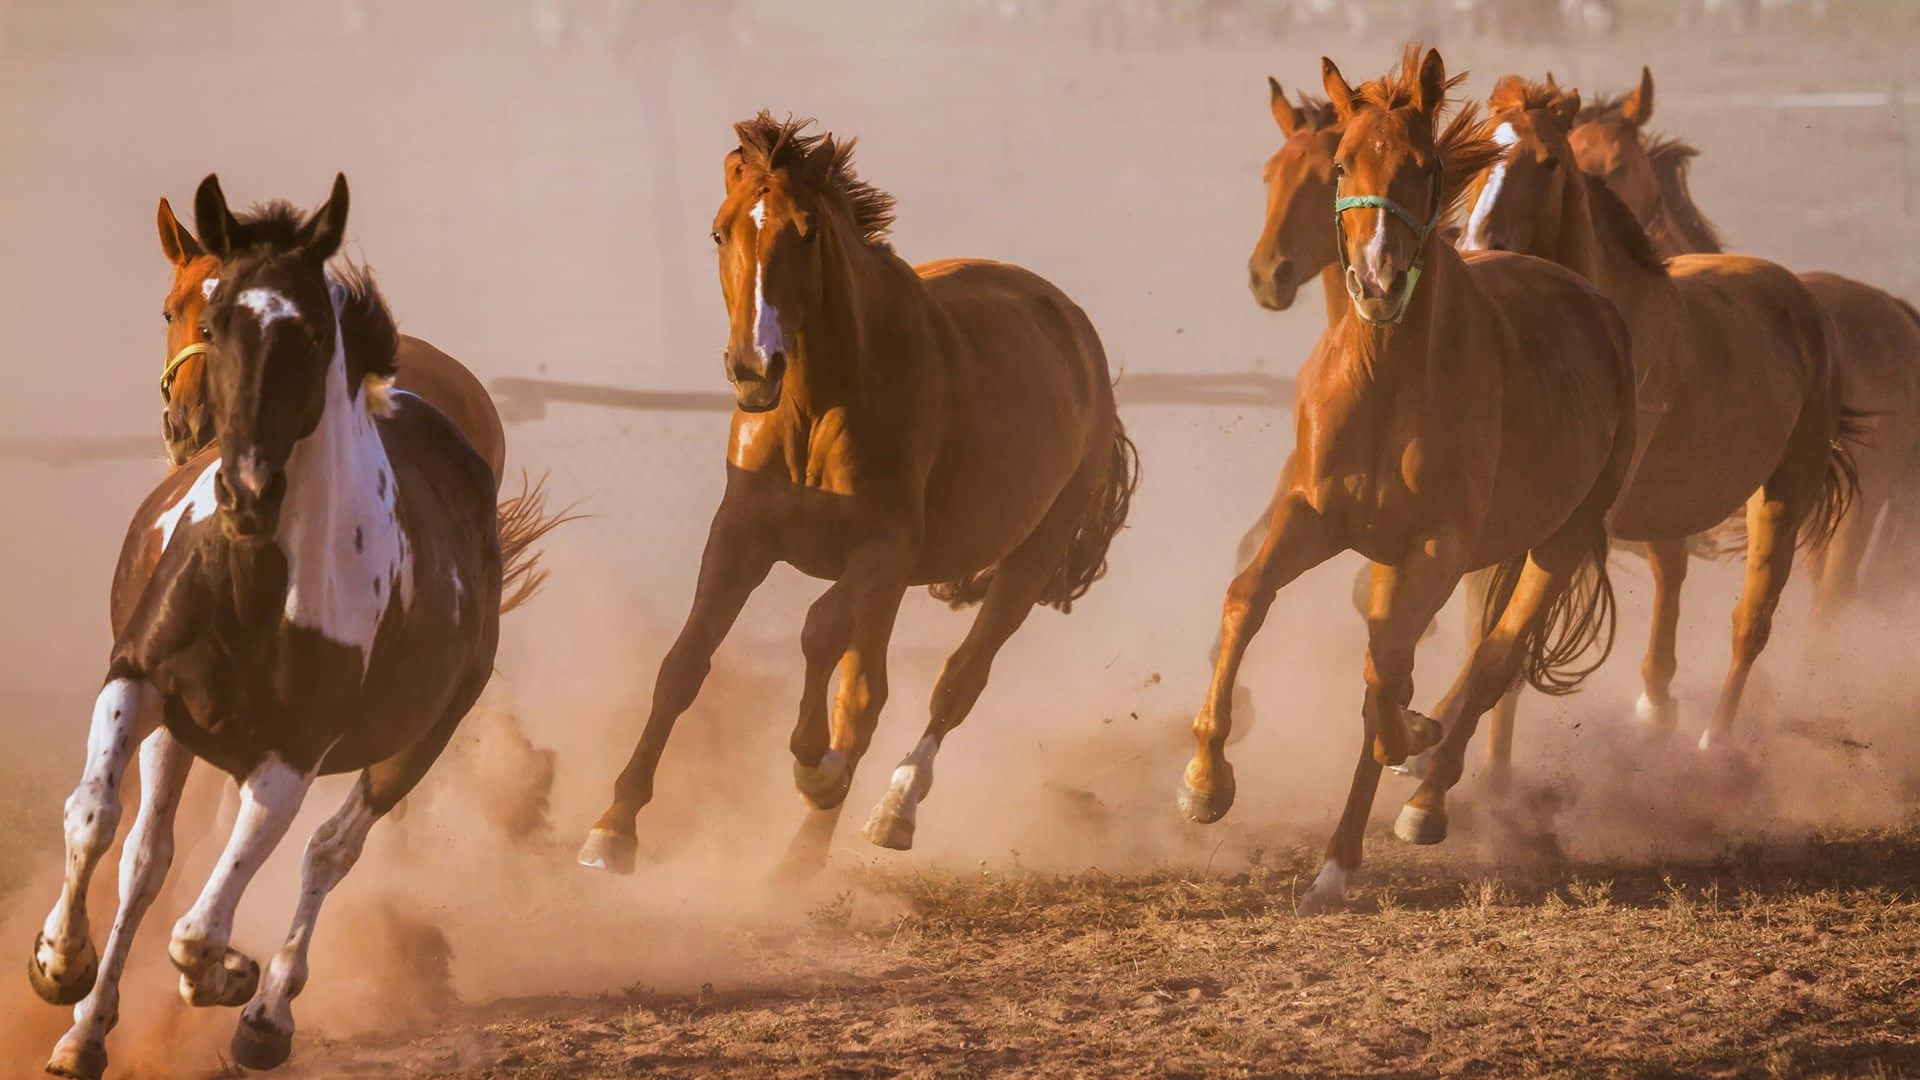 Download 7 Horses Artistic Capture Wallpaper 